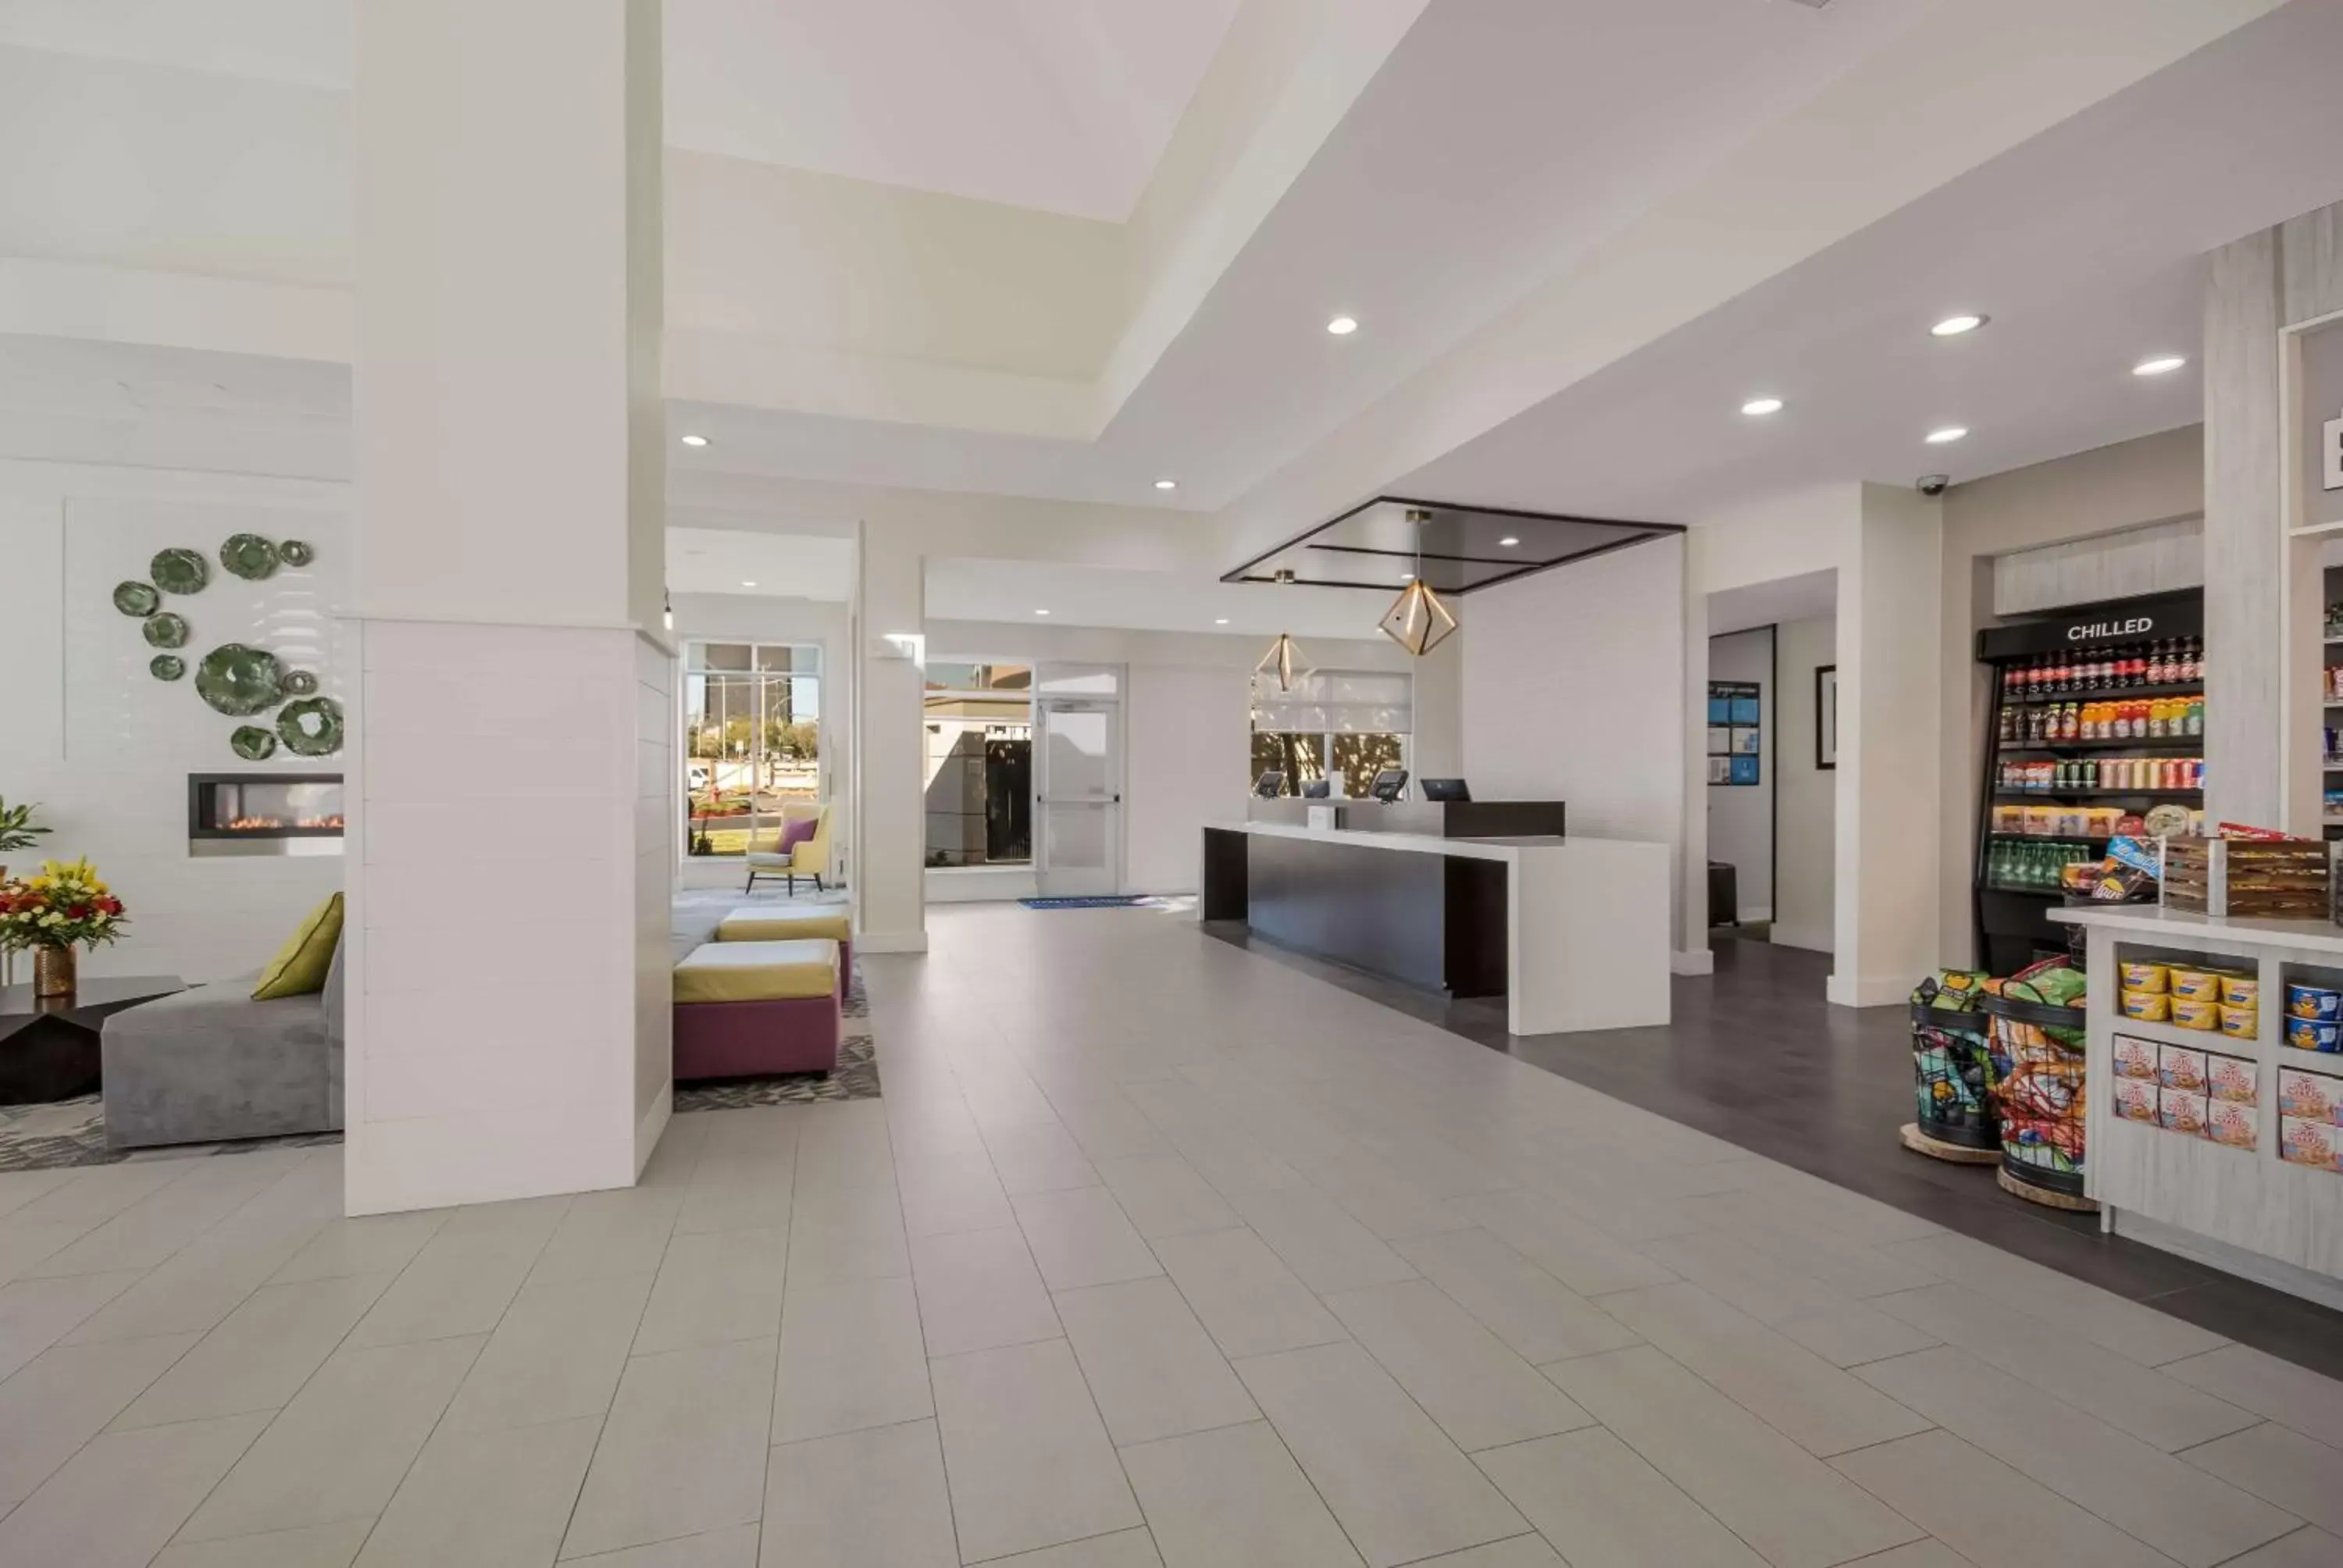 Lobby or reception, Lobby/Reception in Hilton Garden Inn Oklahoma City Midtown